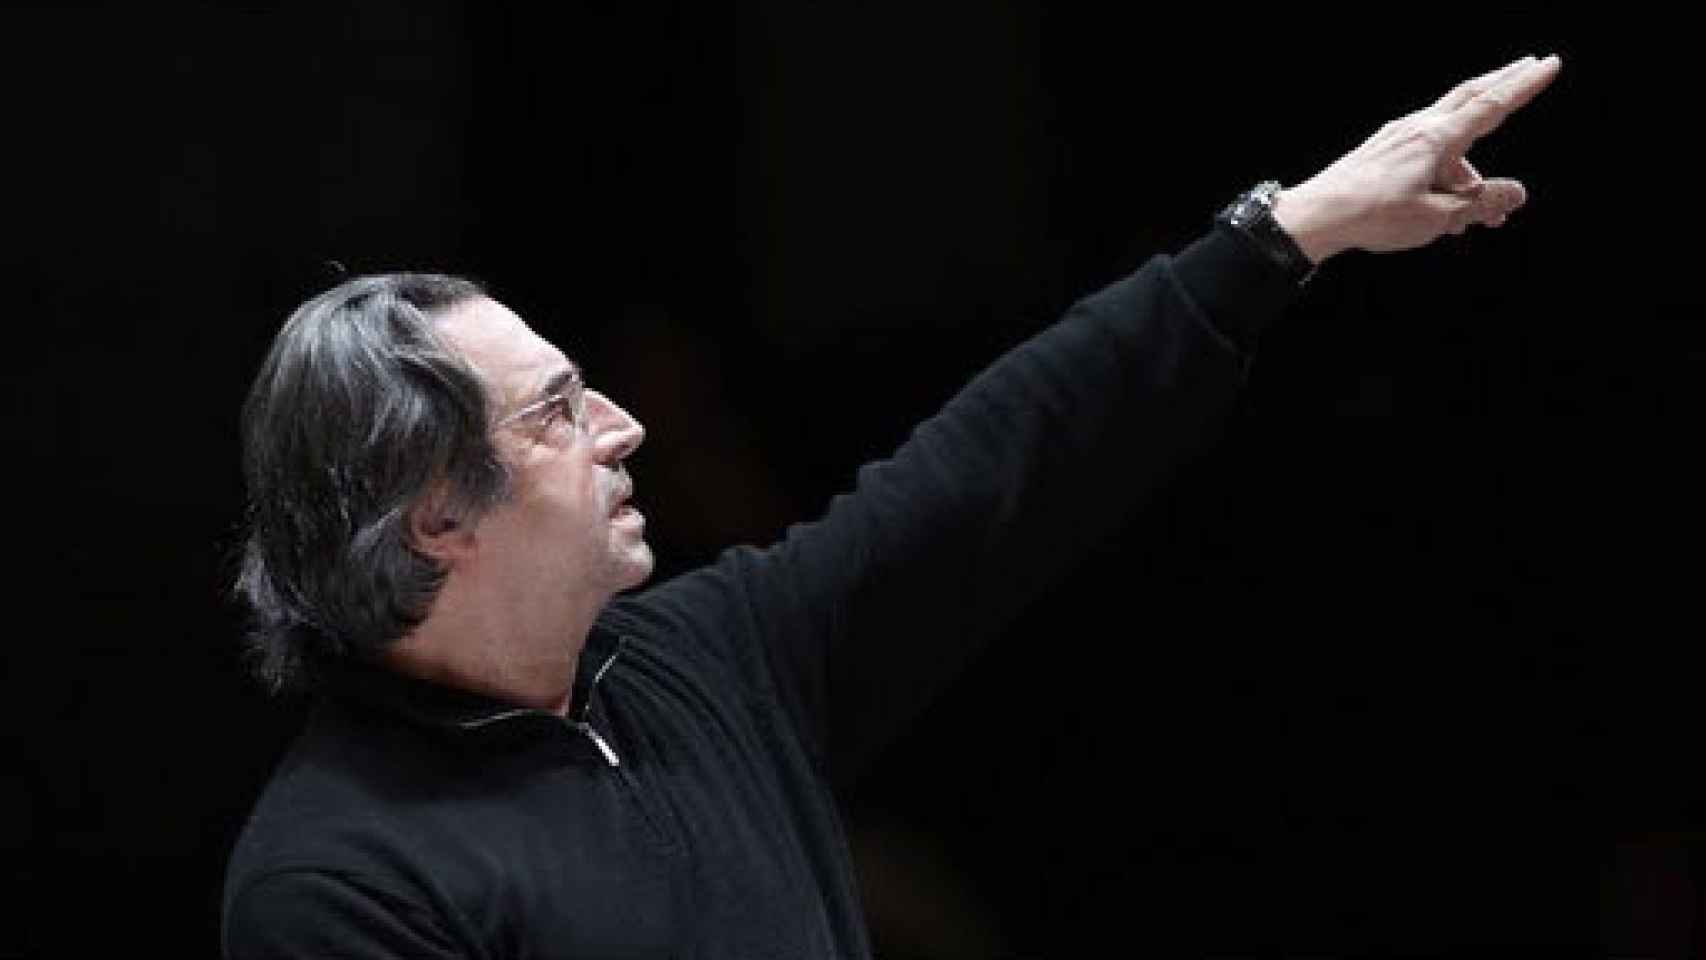 Image: Riccardo Muti: Verdi es el músico del futuro. Debemos redescubrir su esencia